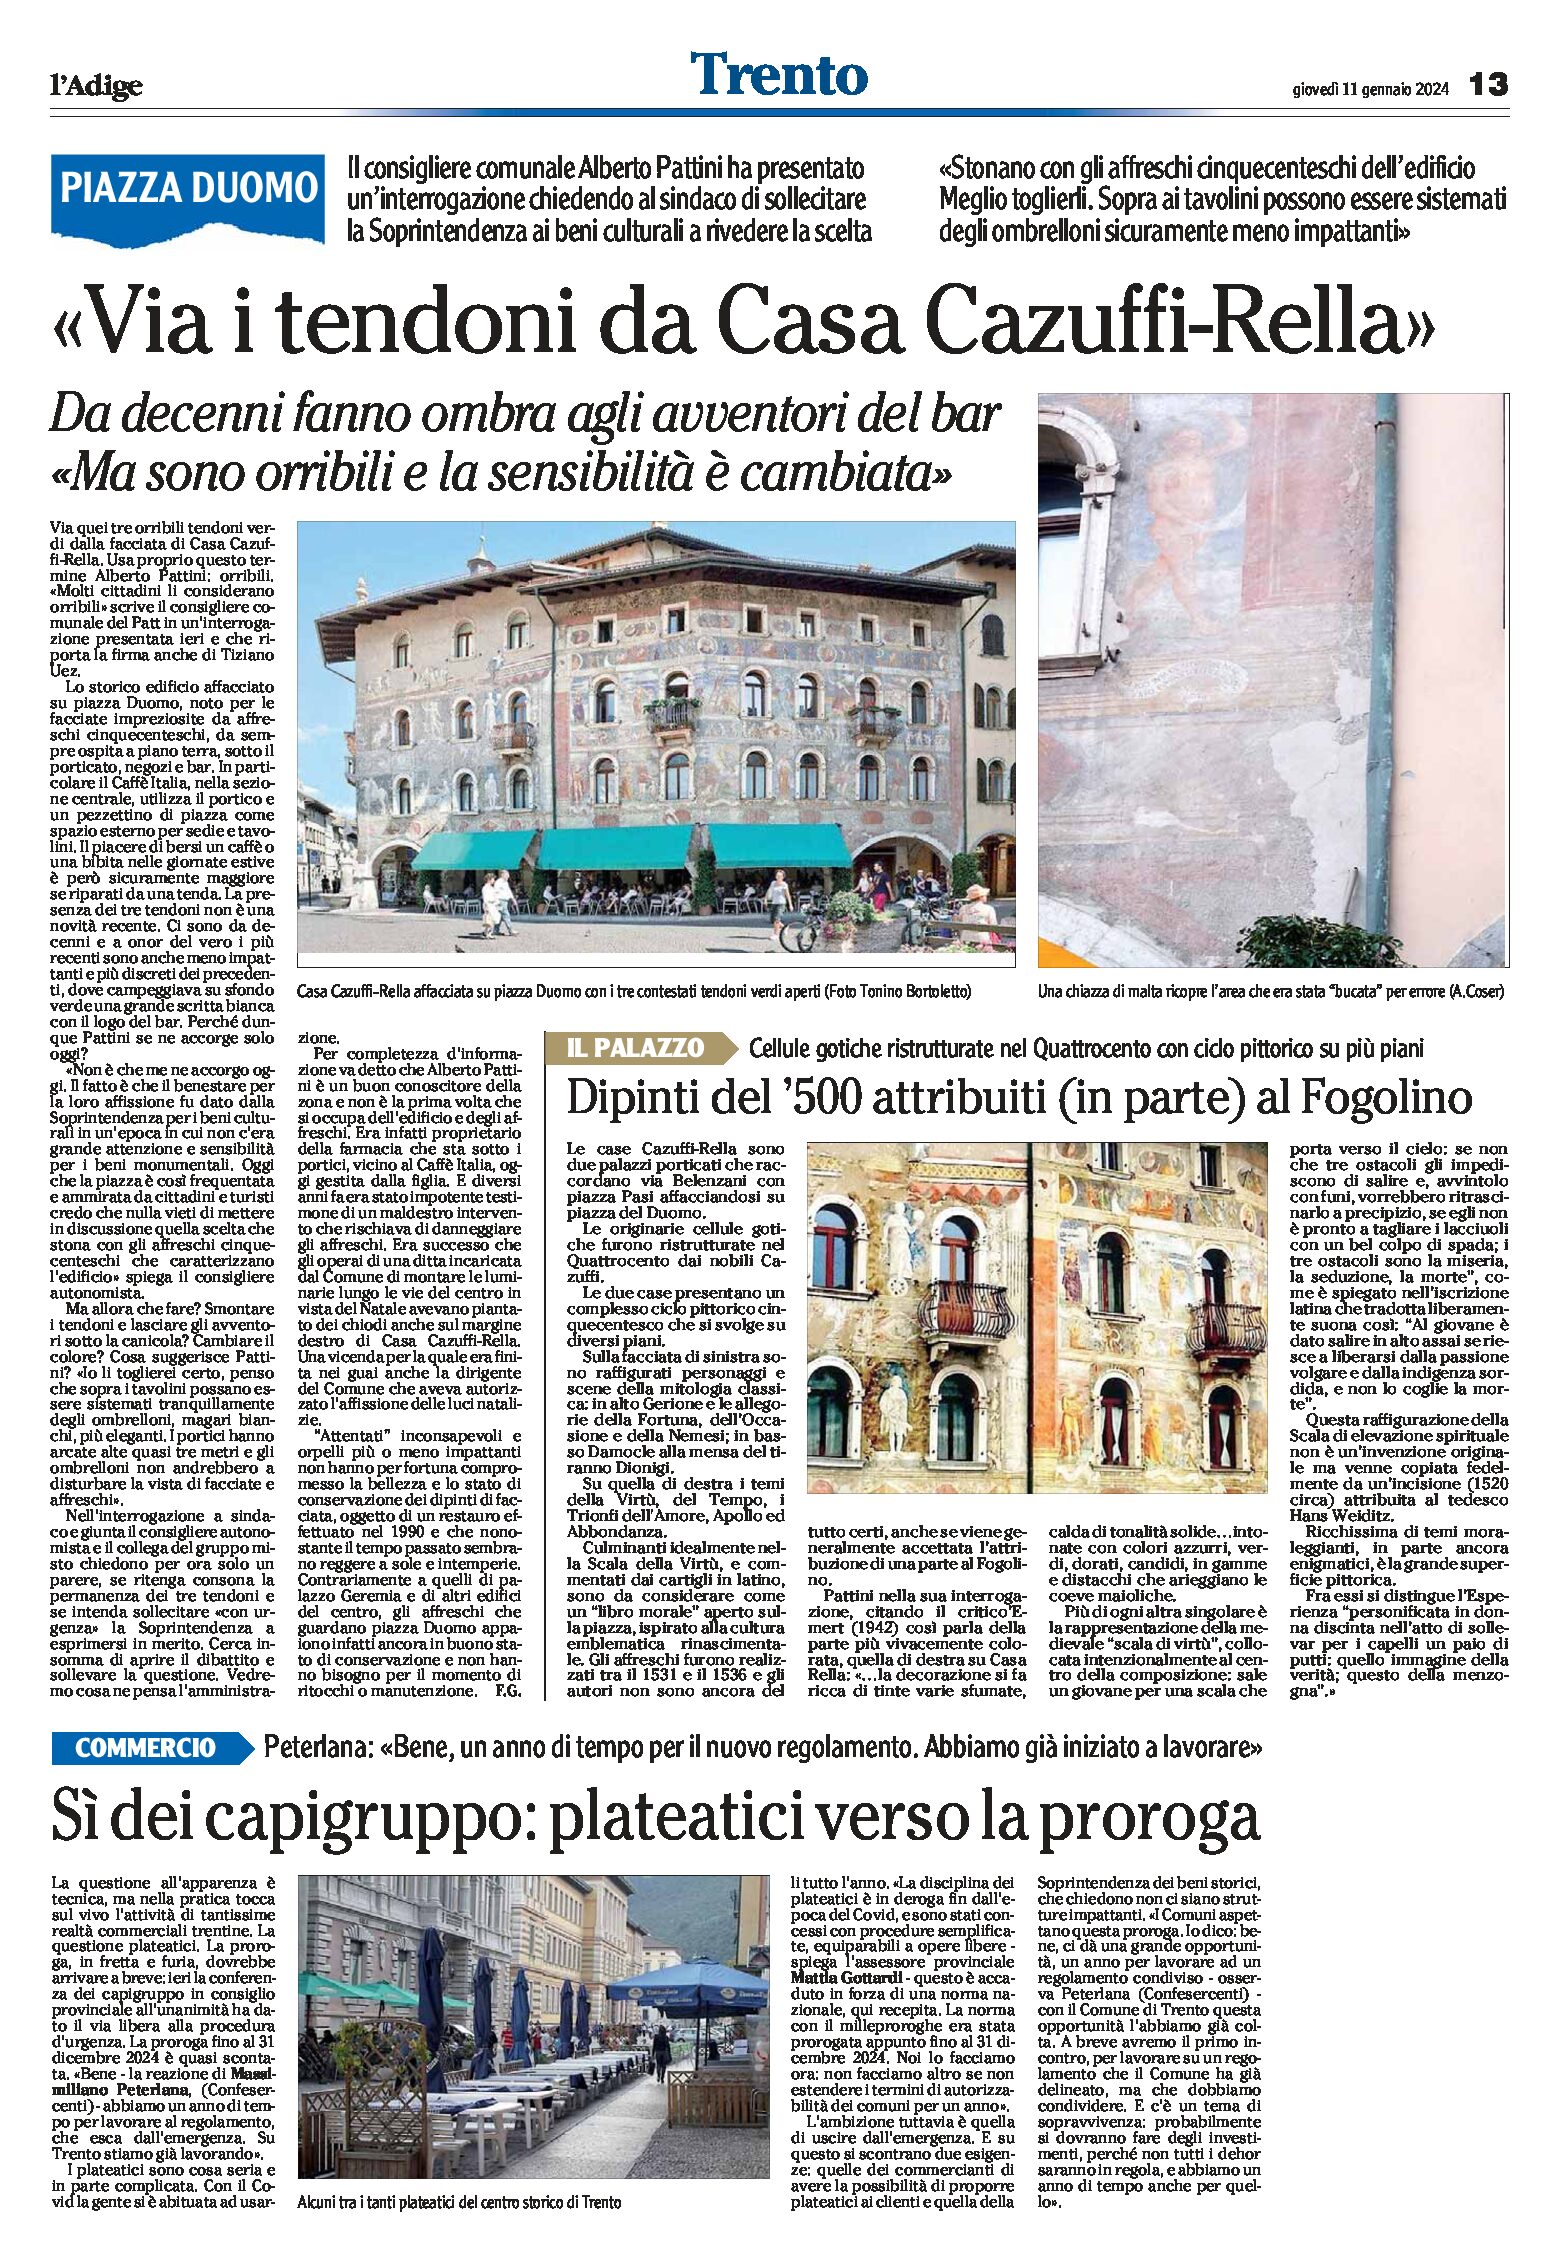 Trento, piazza Duomo: Pattini “via i tendoni da casa Cazuffi-Rella”